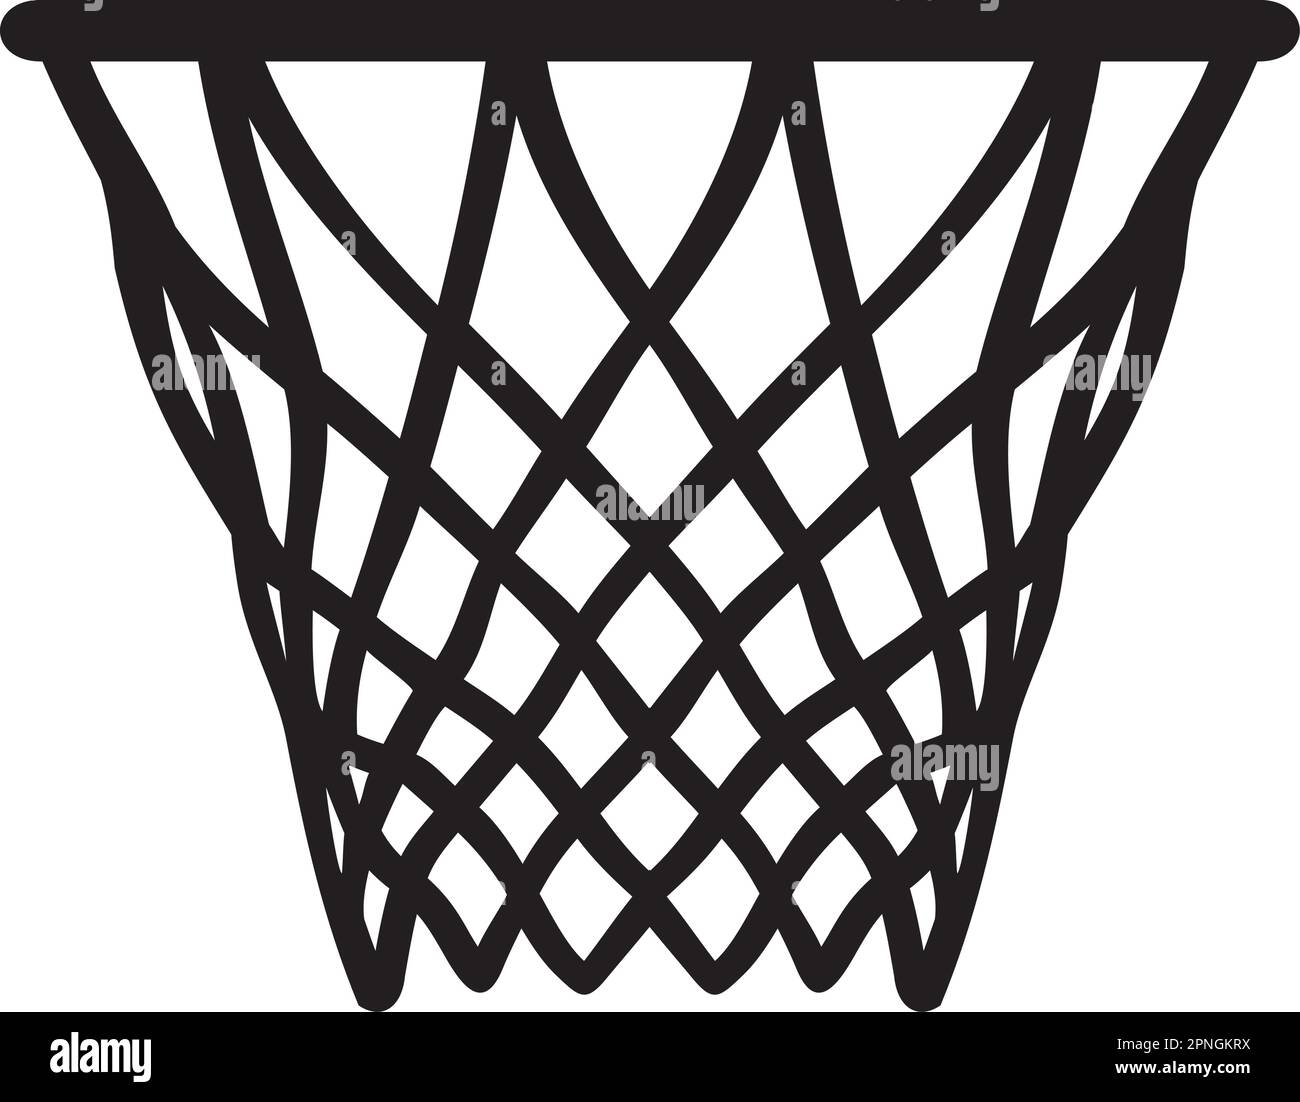 Canestro da basket bianco e nero. Illustrazione vettoriale Illustrazione Vettoriale